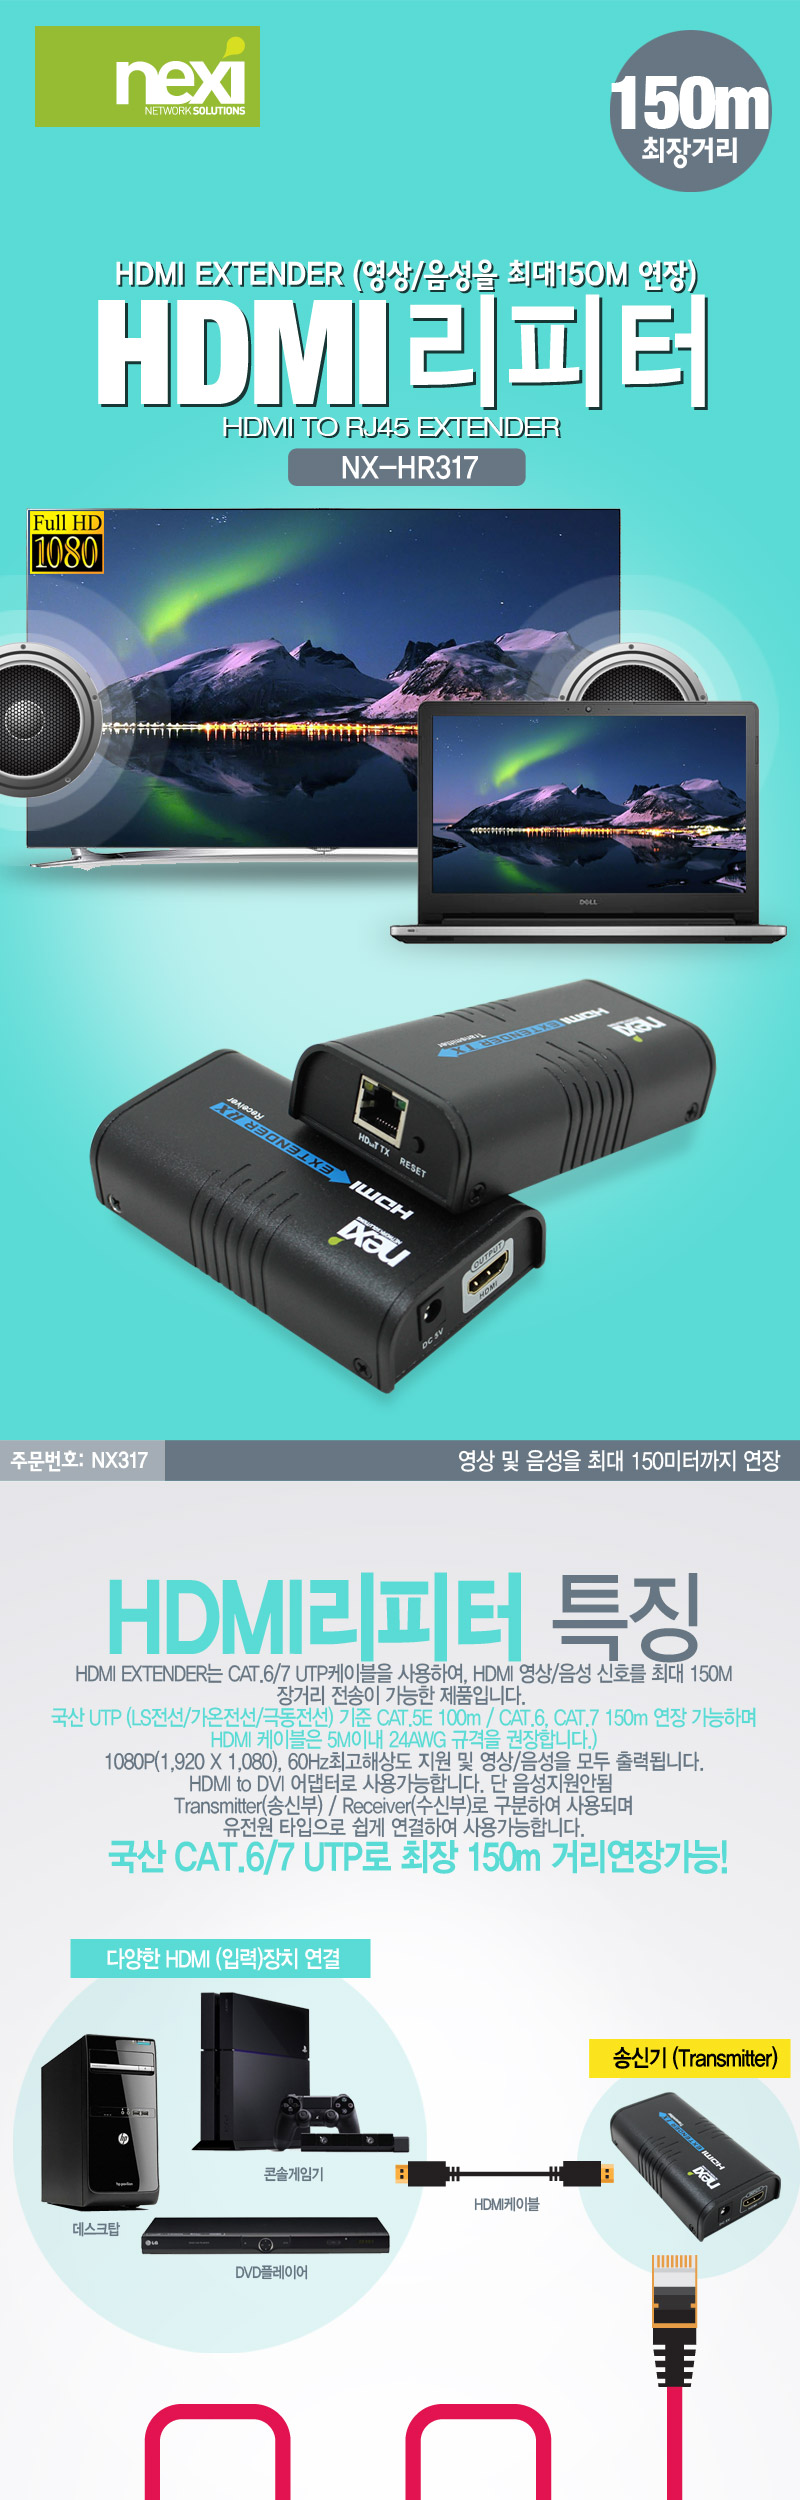 HDMI_EXTENDER_01_141913.jpg